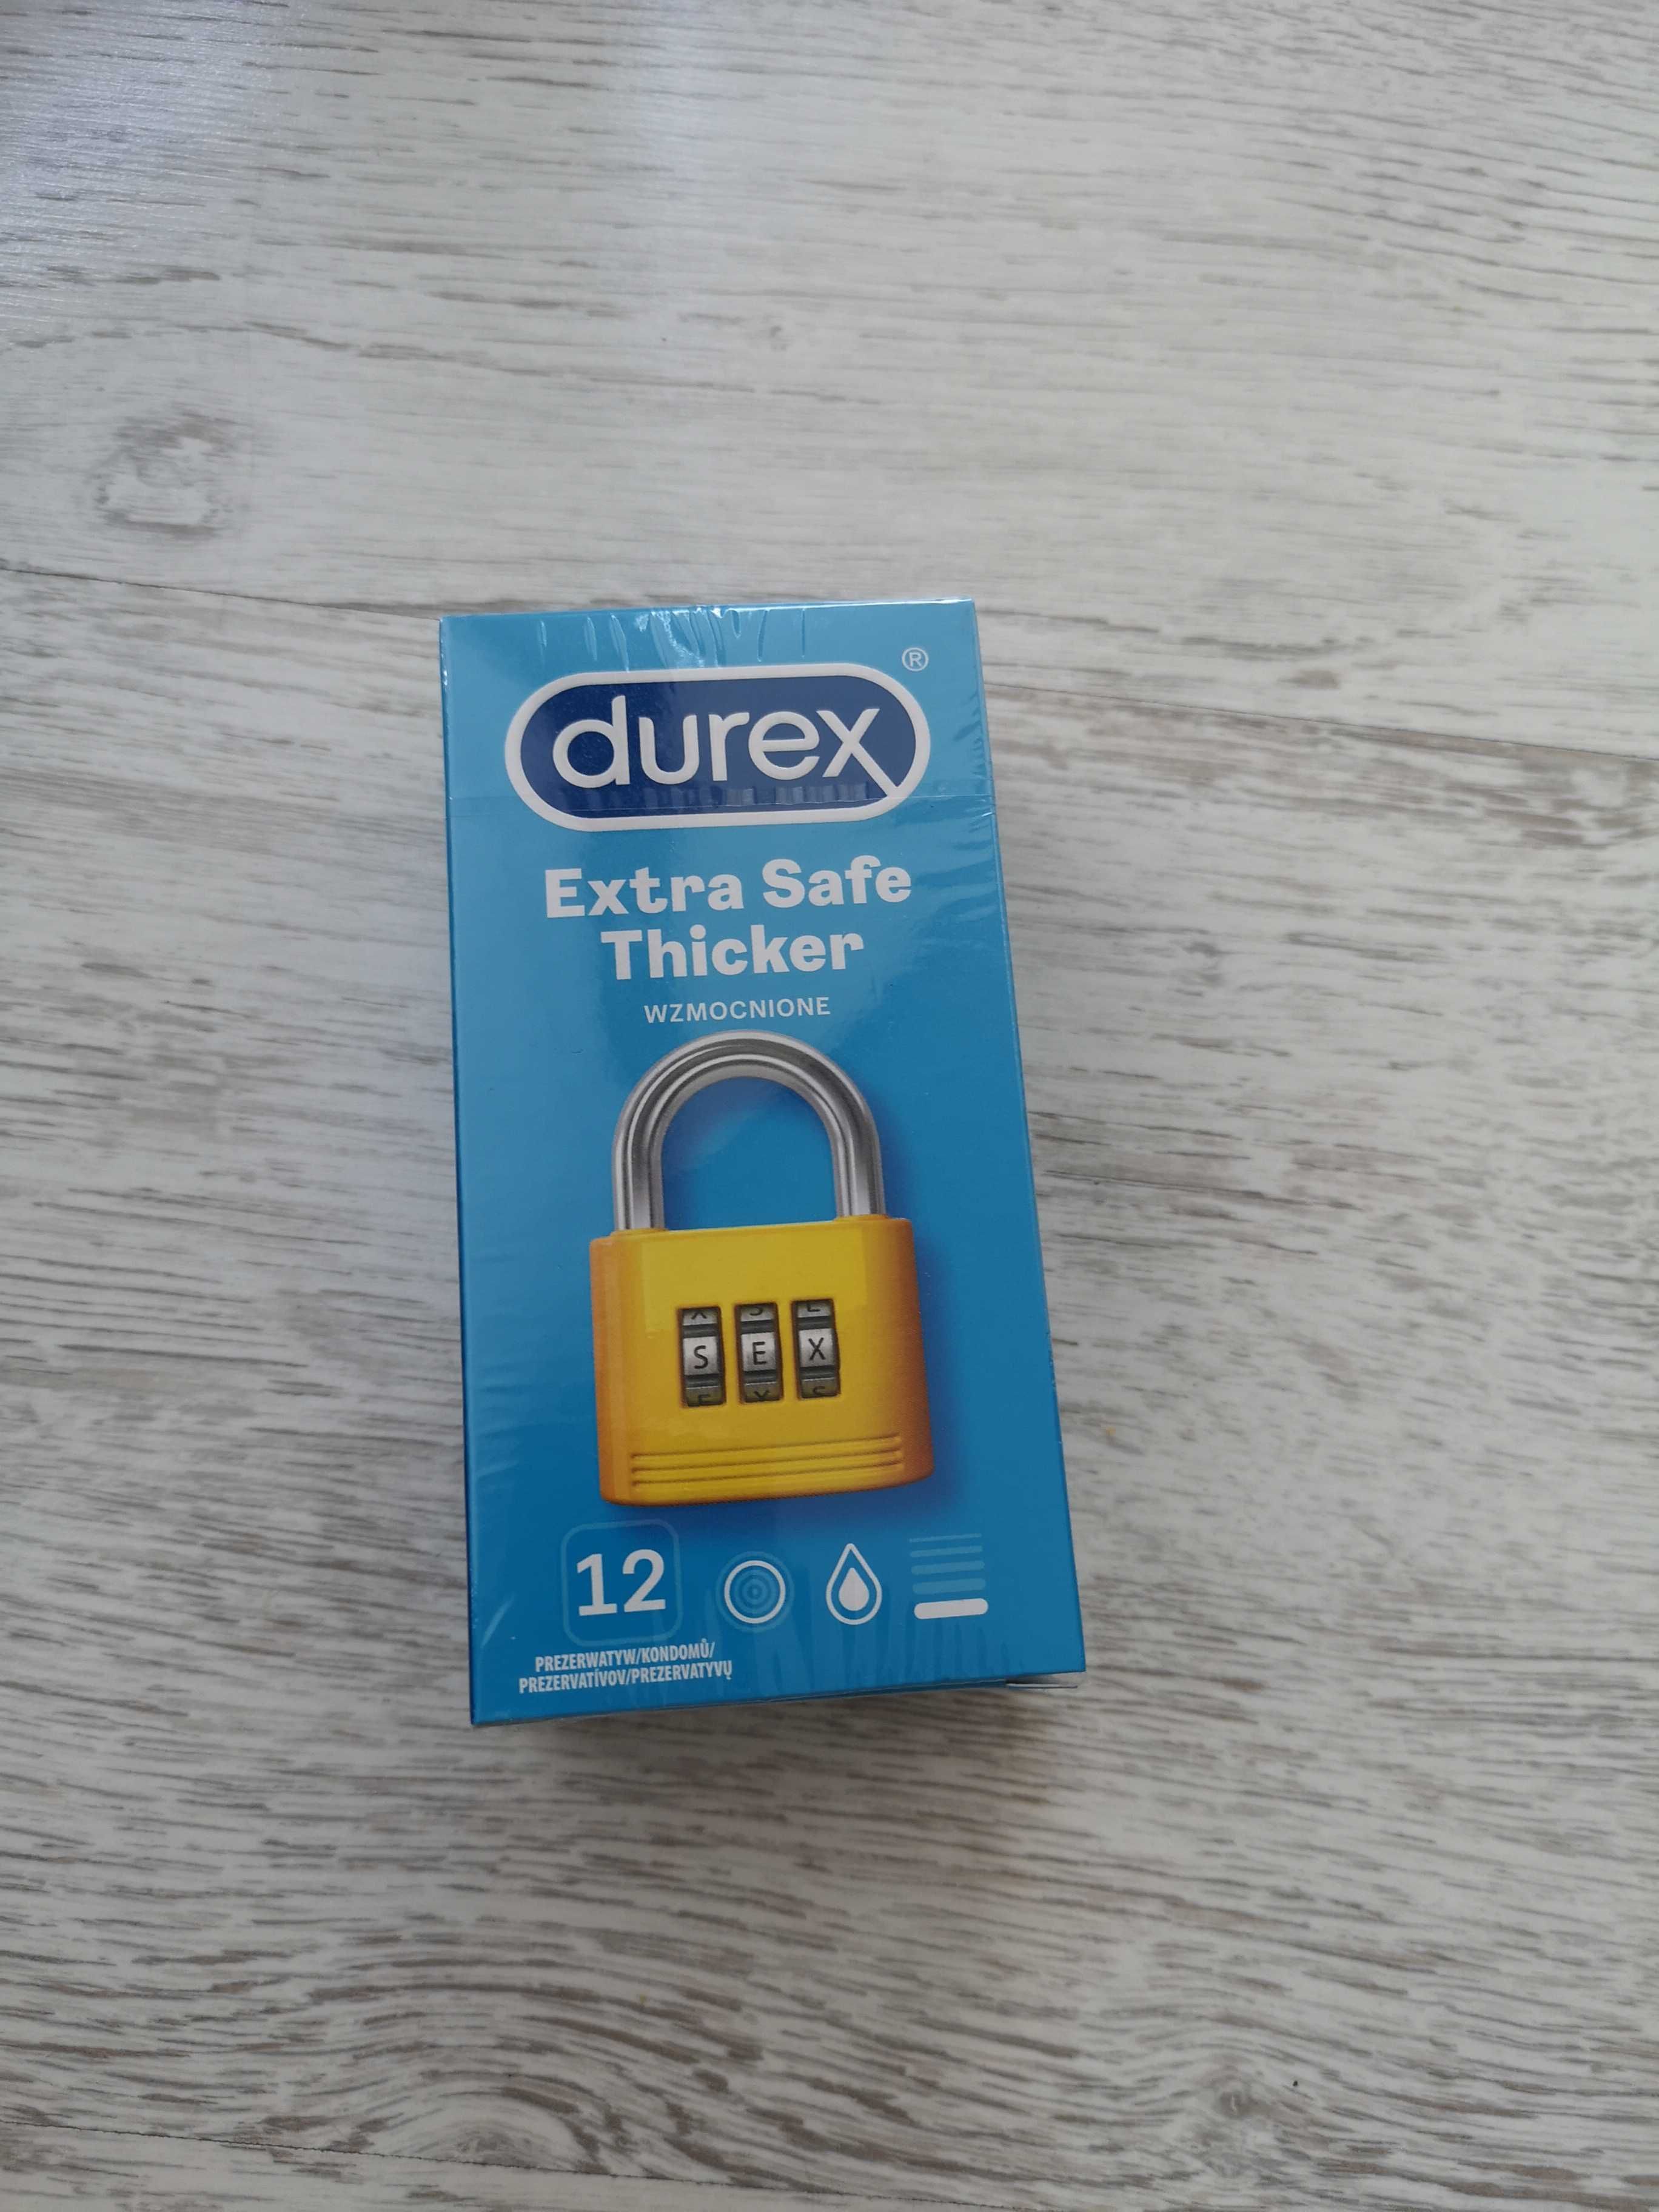 DUREX EXTRA SAFE THICKER prezerwatywy 12 szt.